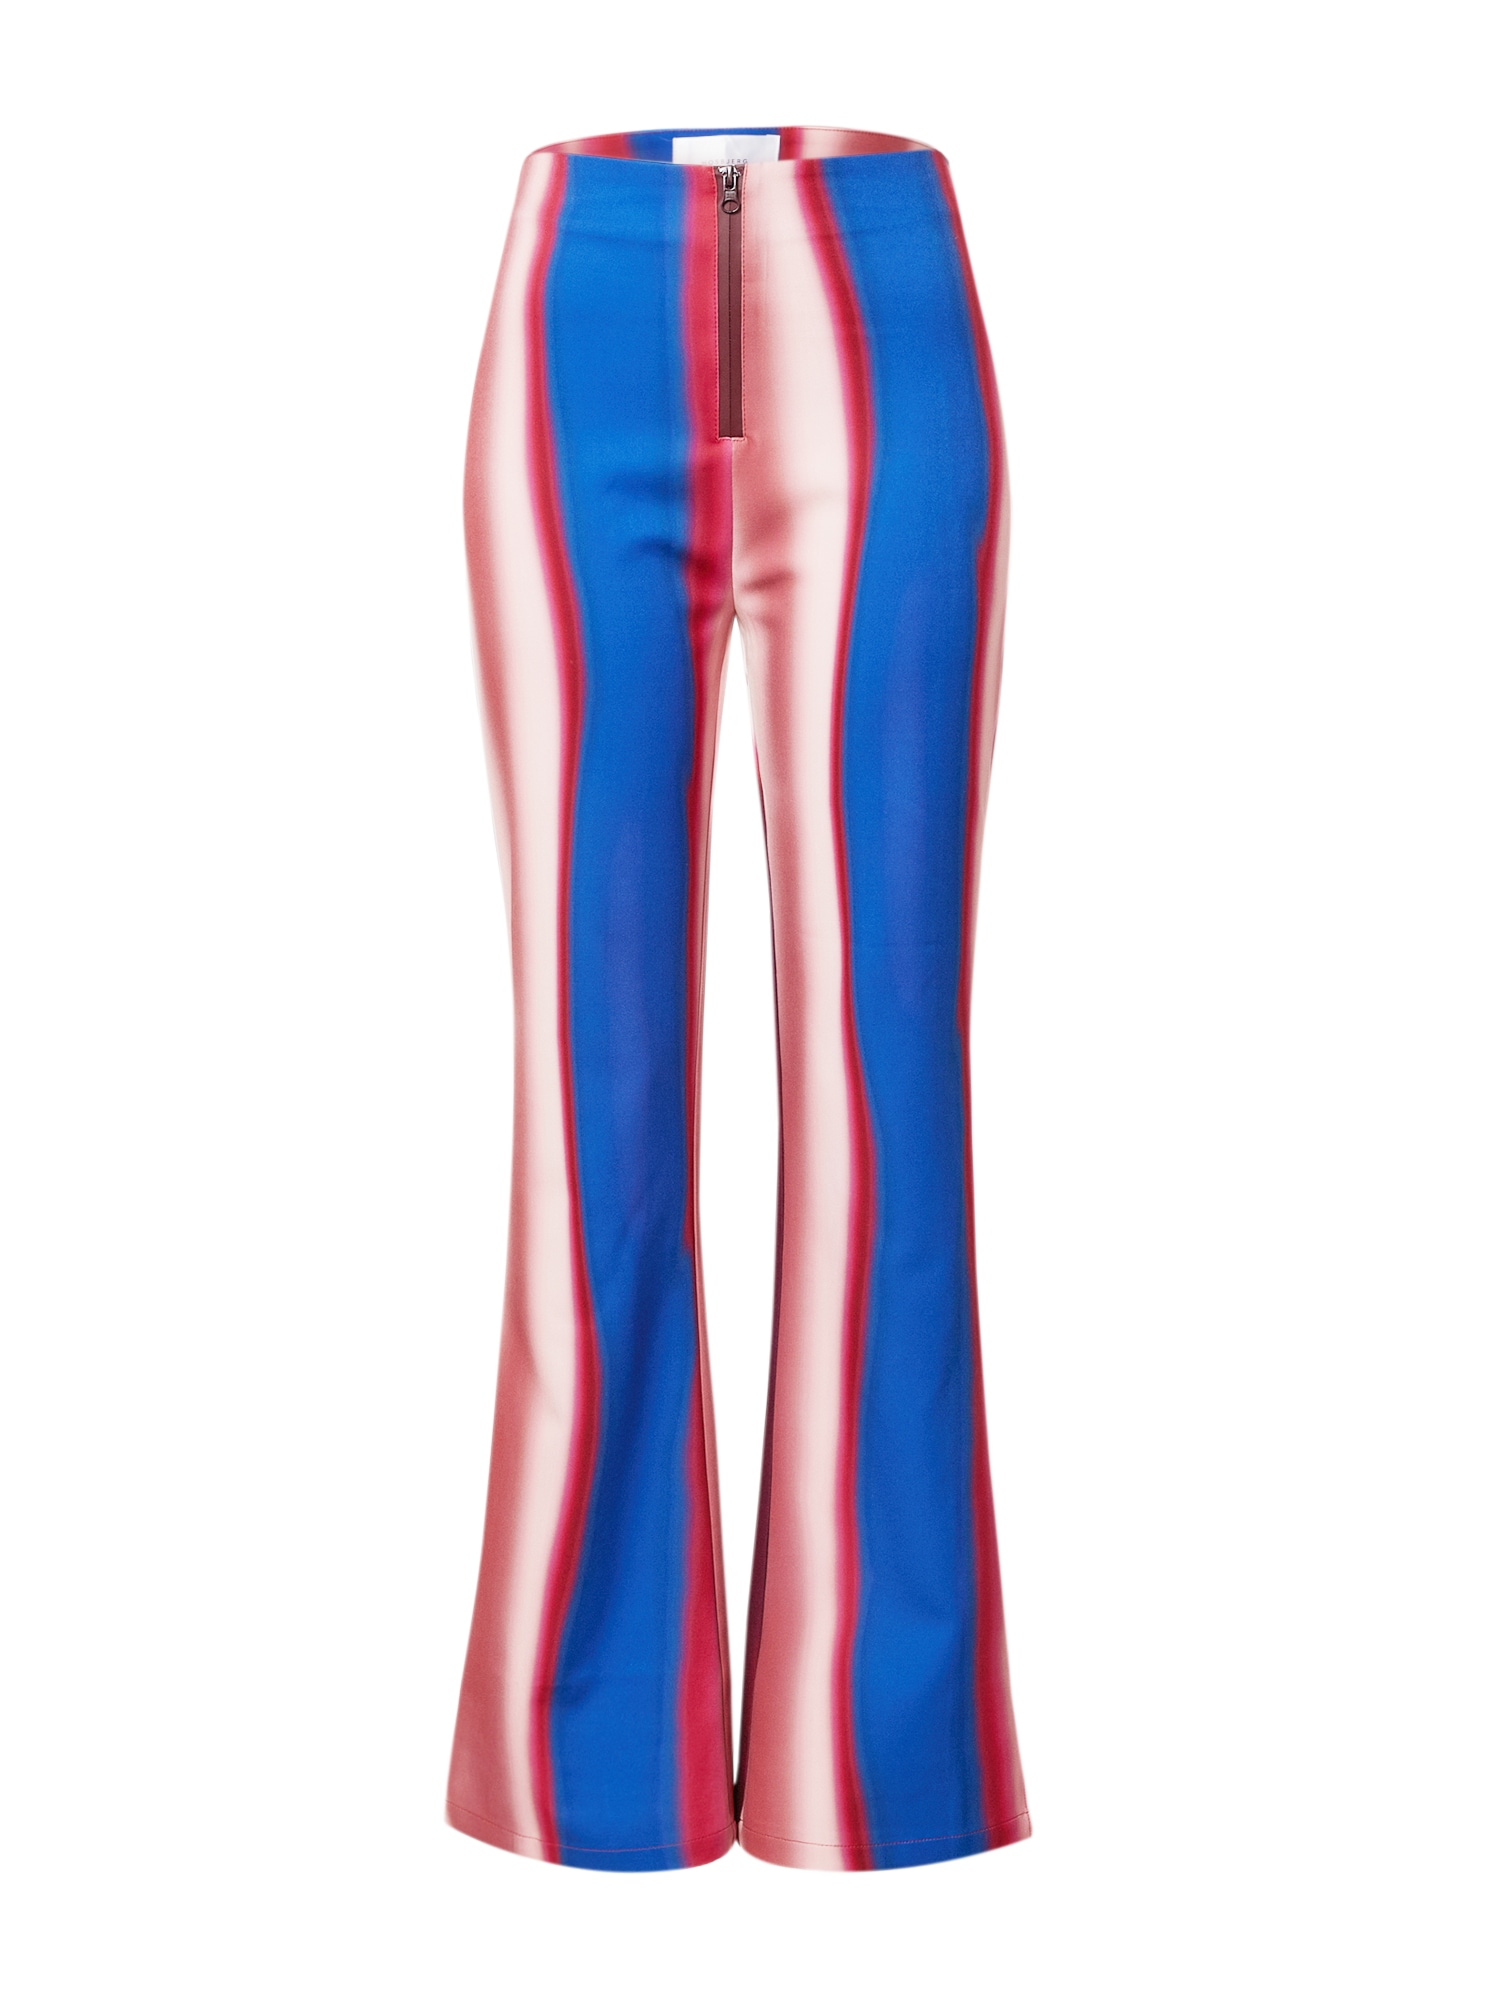 Hosbjerg Kelnės 'Hunch Adele' avietinė / mėlyna / balkšva / ryškiai rožinė spalva